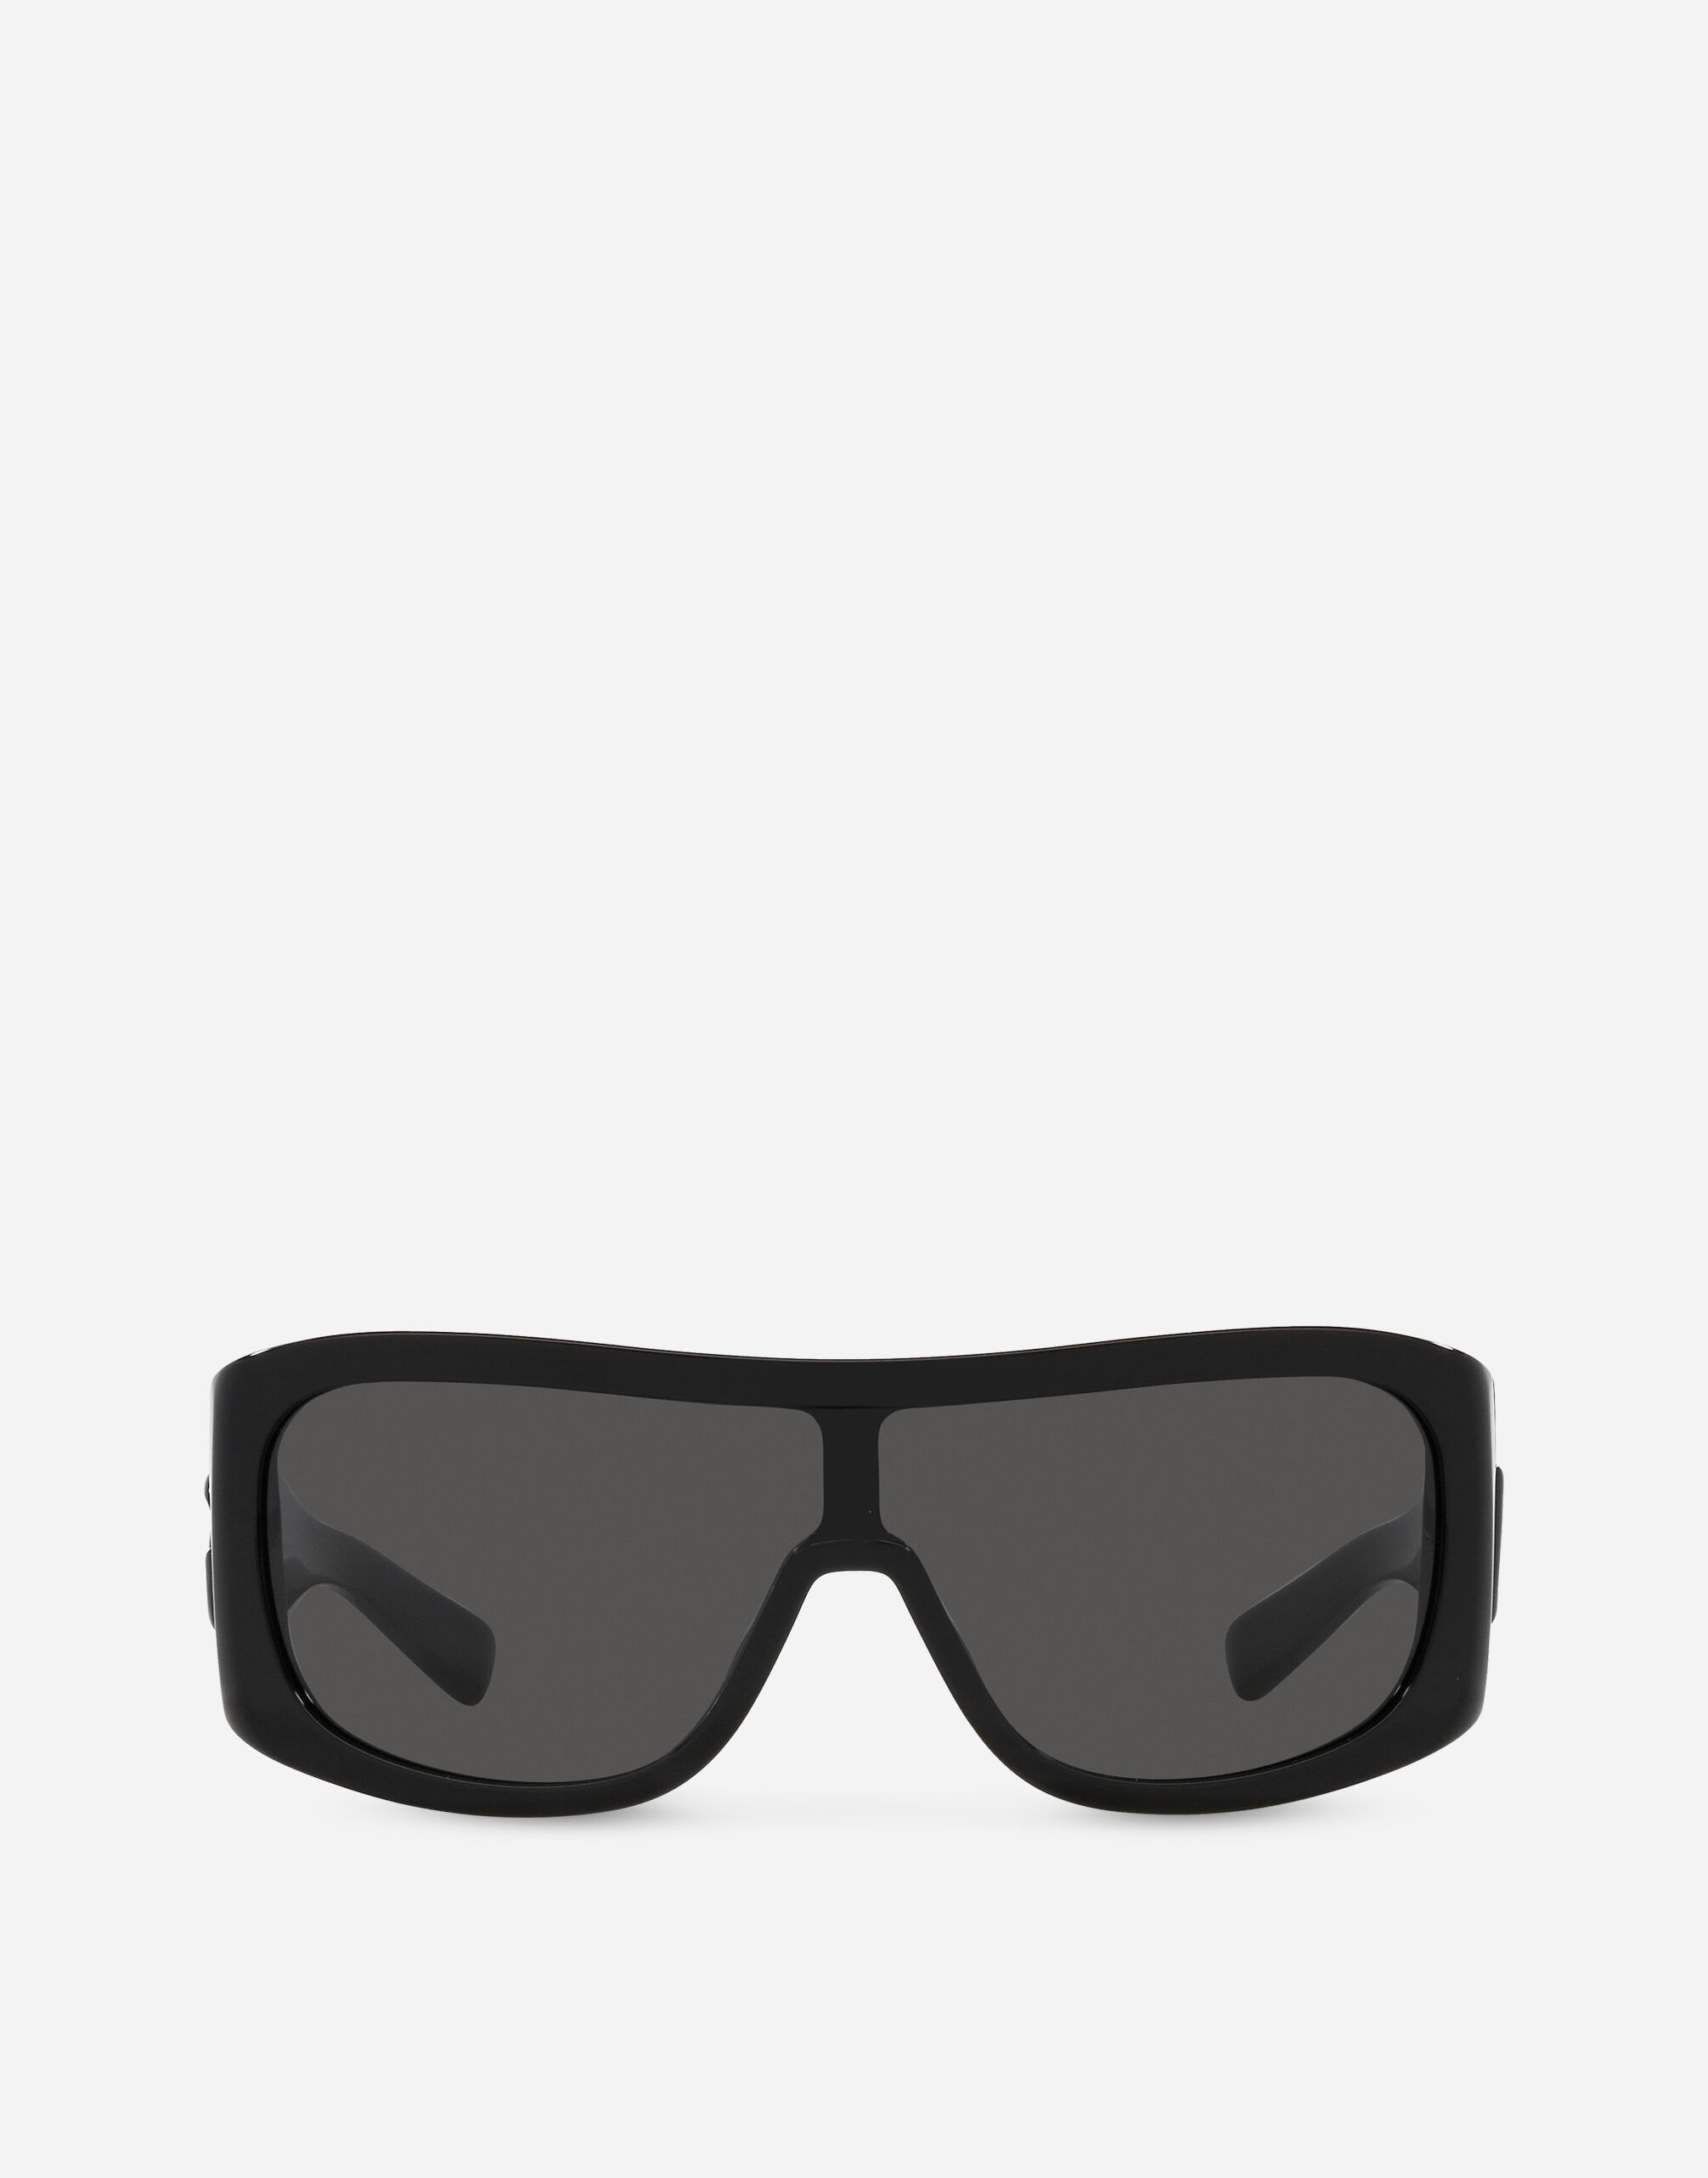 Dolce & Gabbana DG crossed sunglasses Black VG6187VN187